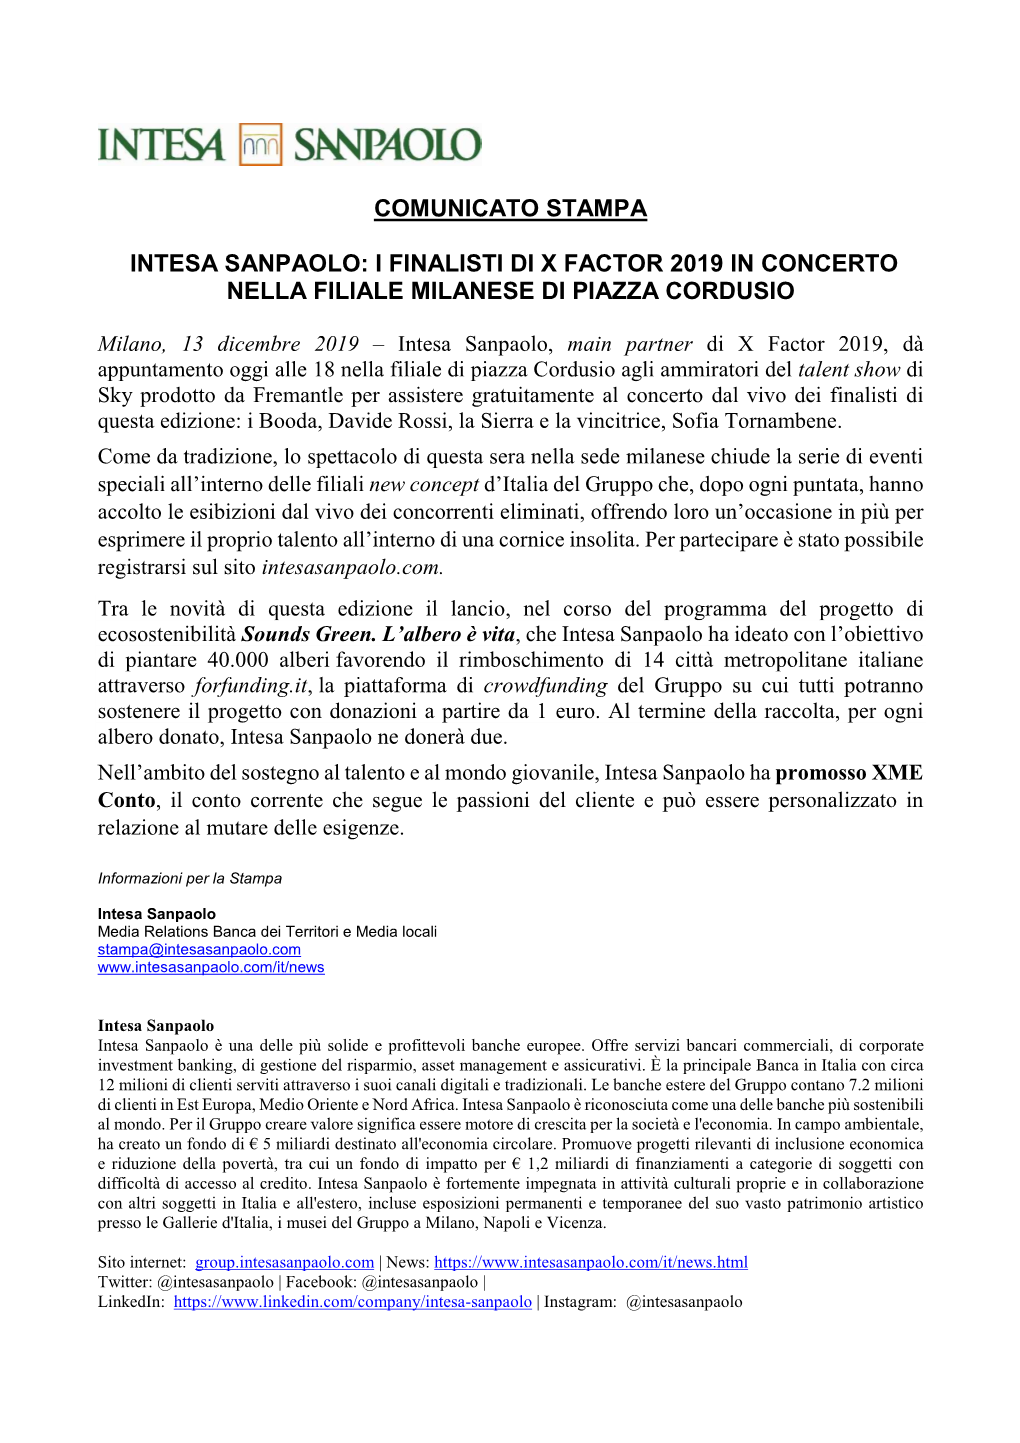 Comunicato Stampa Intesa Sanpaolo Concerto Finalisti X Factor Cordusio